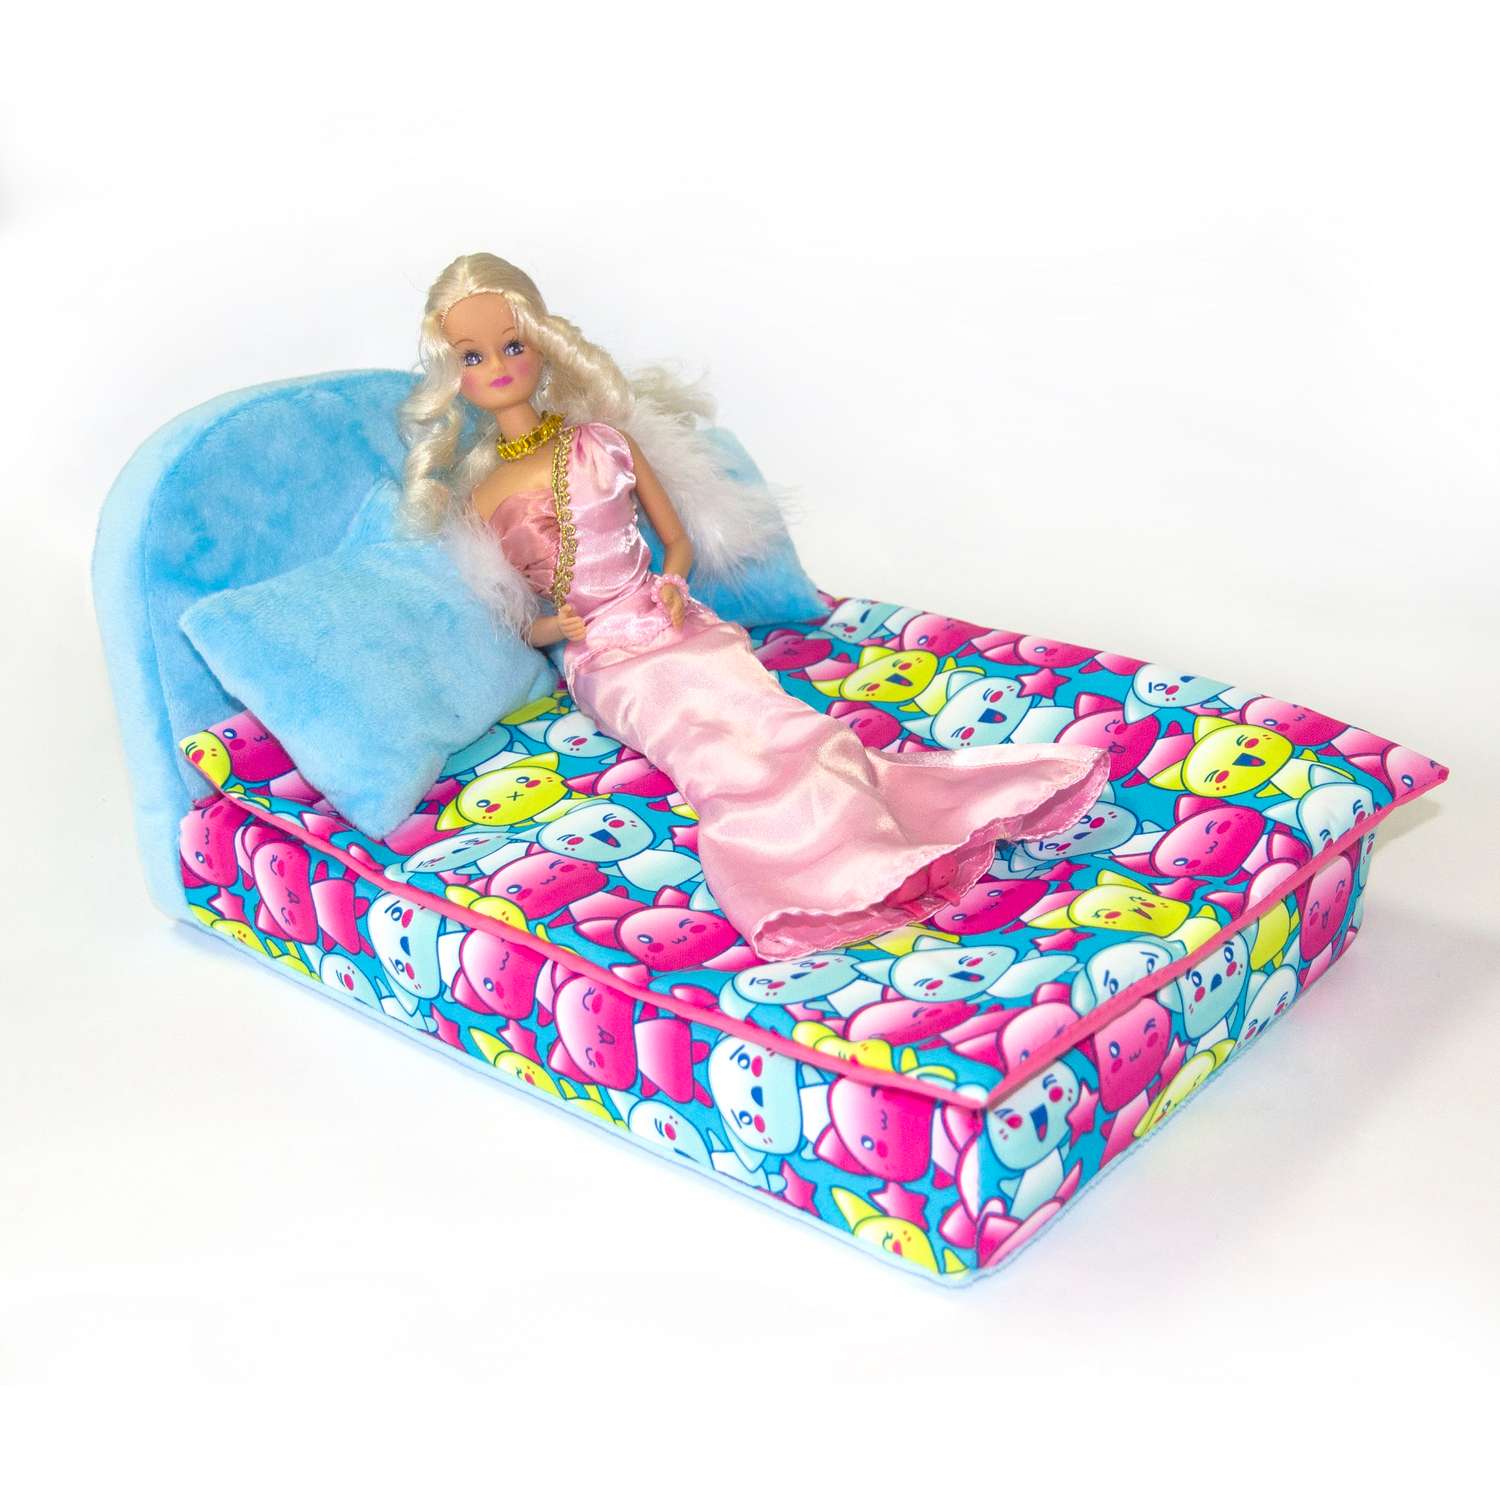 Набор мебели для кукол Belon familia Принт хор котят бирюзовый кровать круглая 2 подушки НМ-003-32 - фото 2